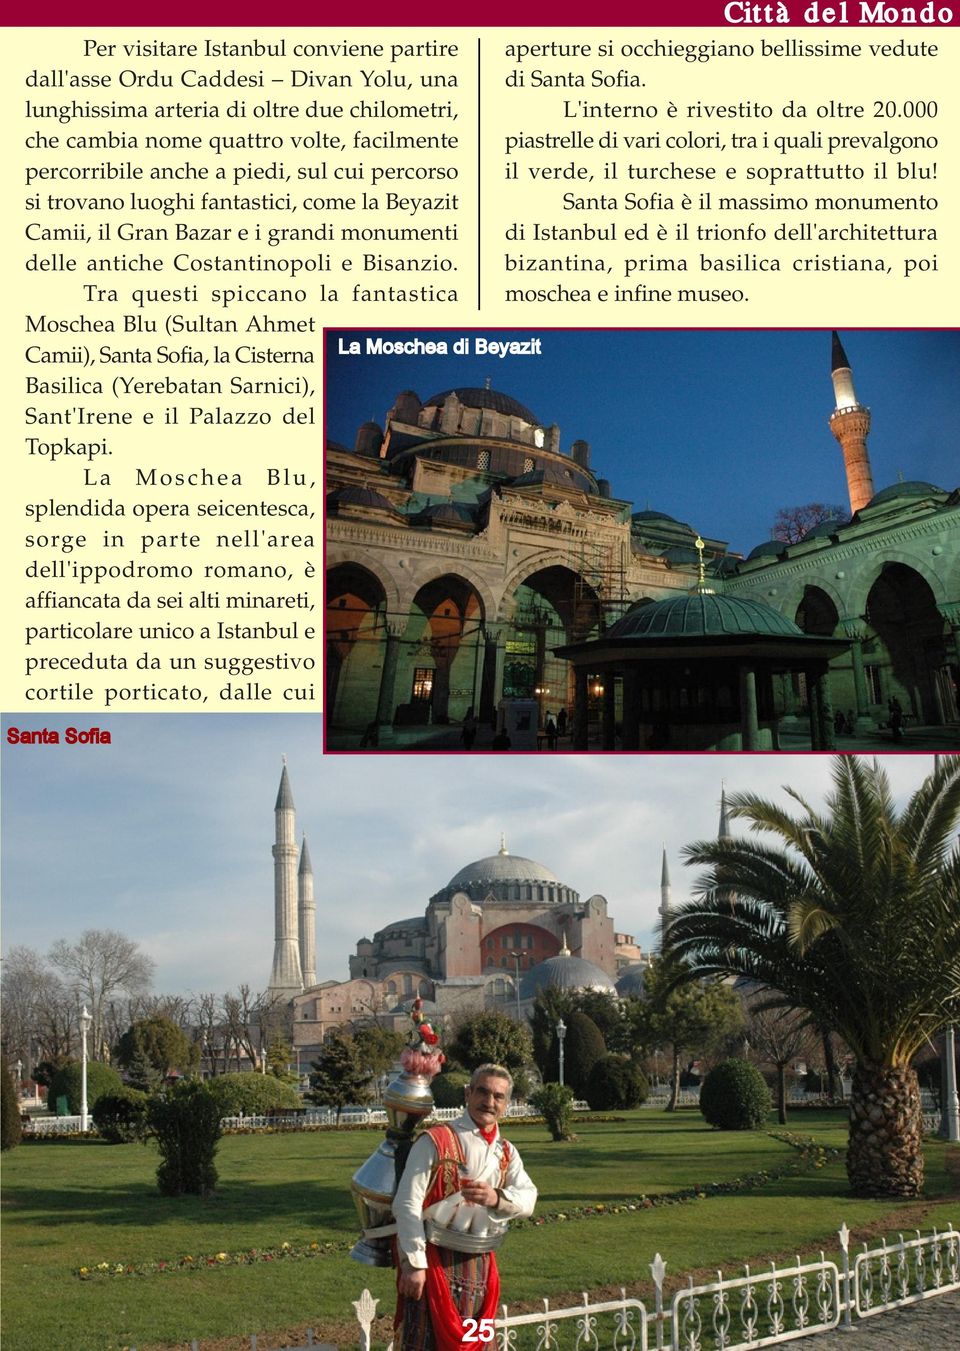 Tra questi spiccano la fantastica Moschea Blu (Sultan Ahmet Camii), Santa Sofia, la Cisterna Basilica (Yerebatan Sarnici), Sant'Irene e il Palazzo del Topkapi.